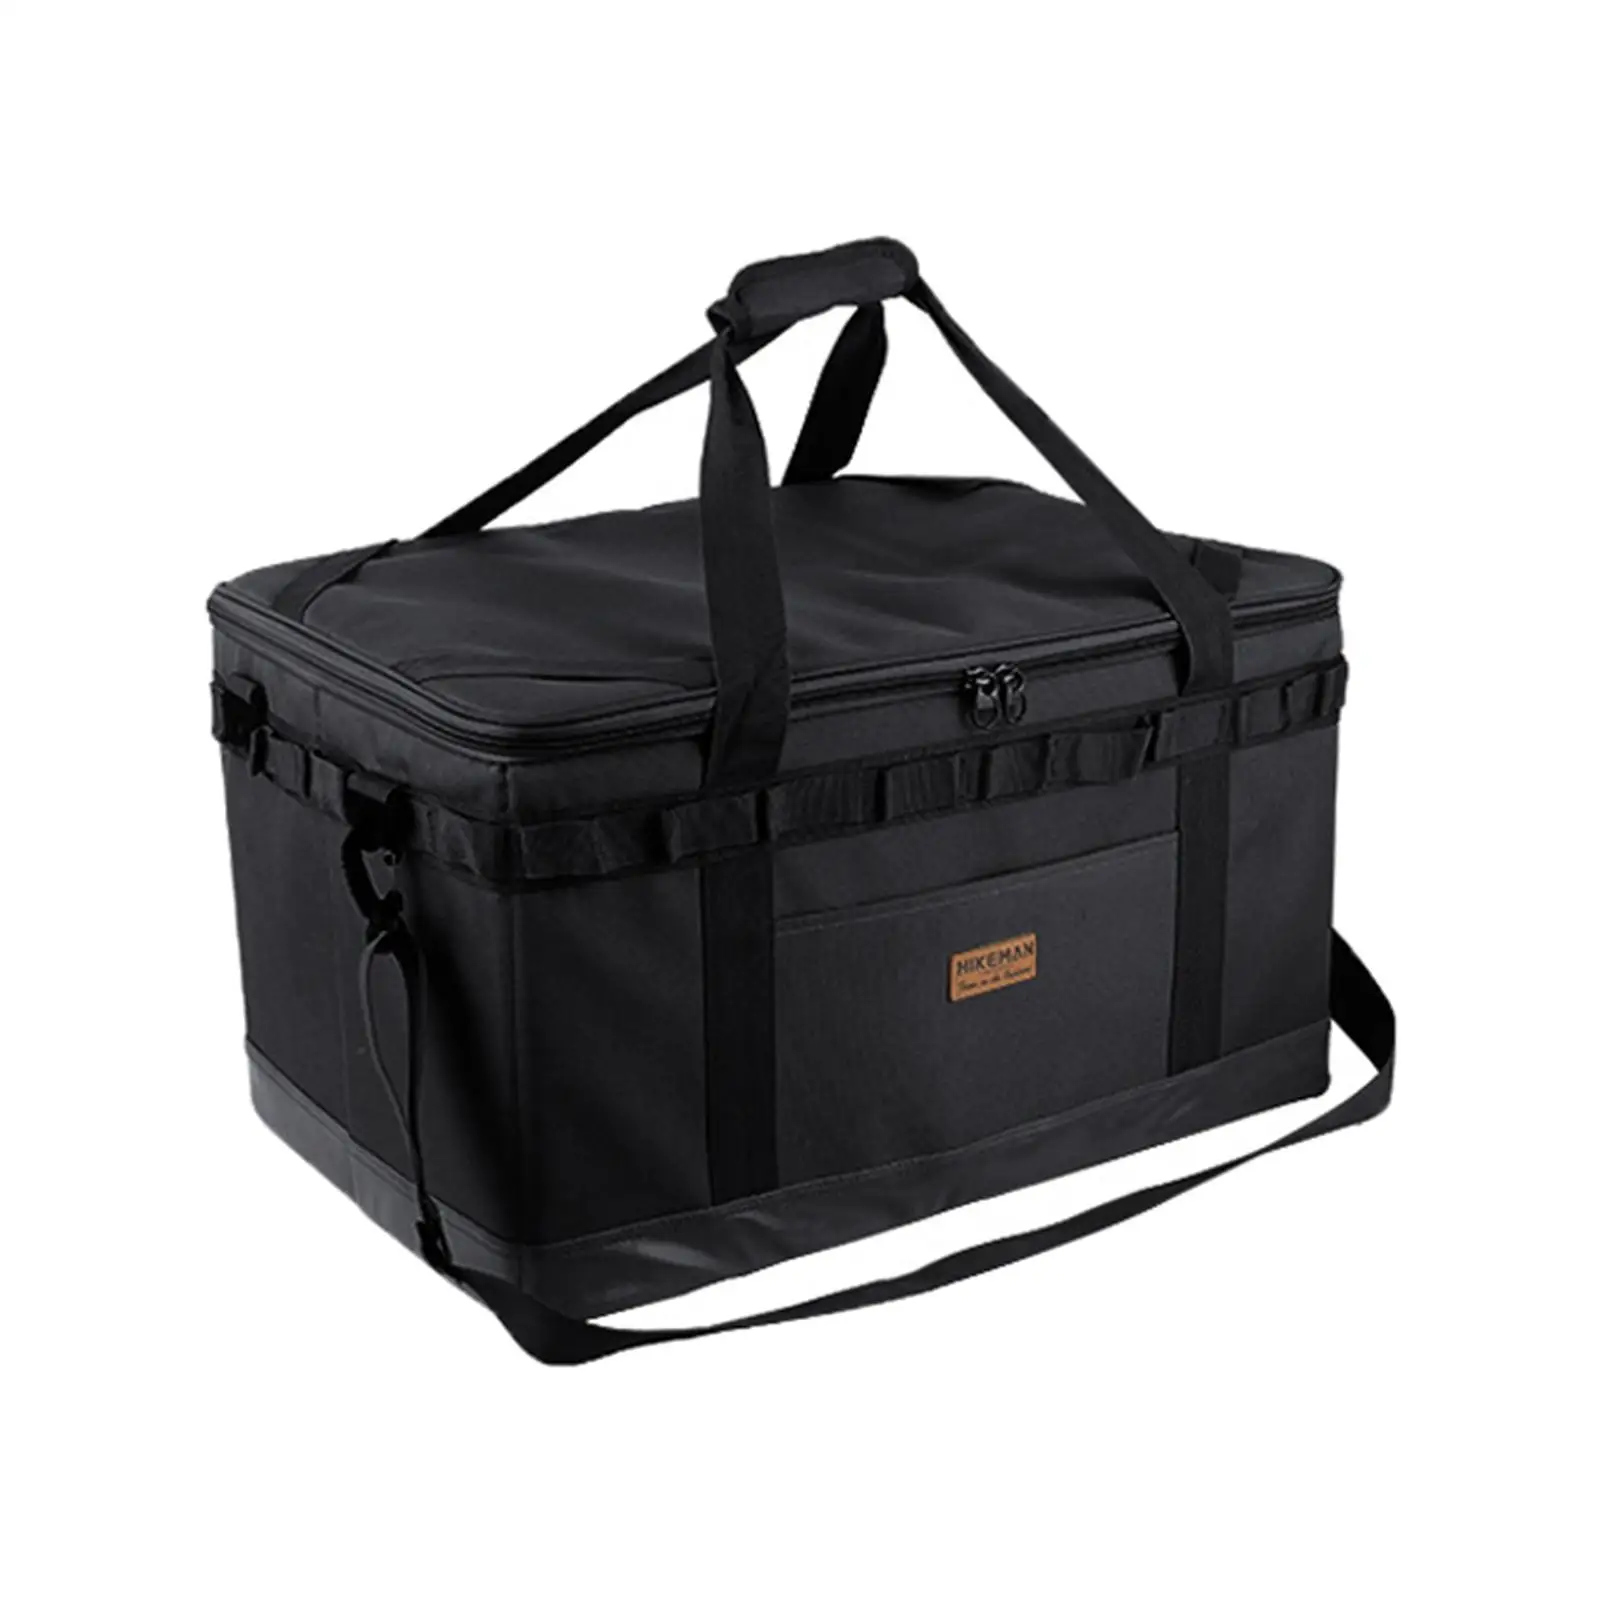 Large Capacity Camping Gear Bag Oxford Cloth Waterproof Travel Bag Duffel Bag